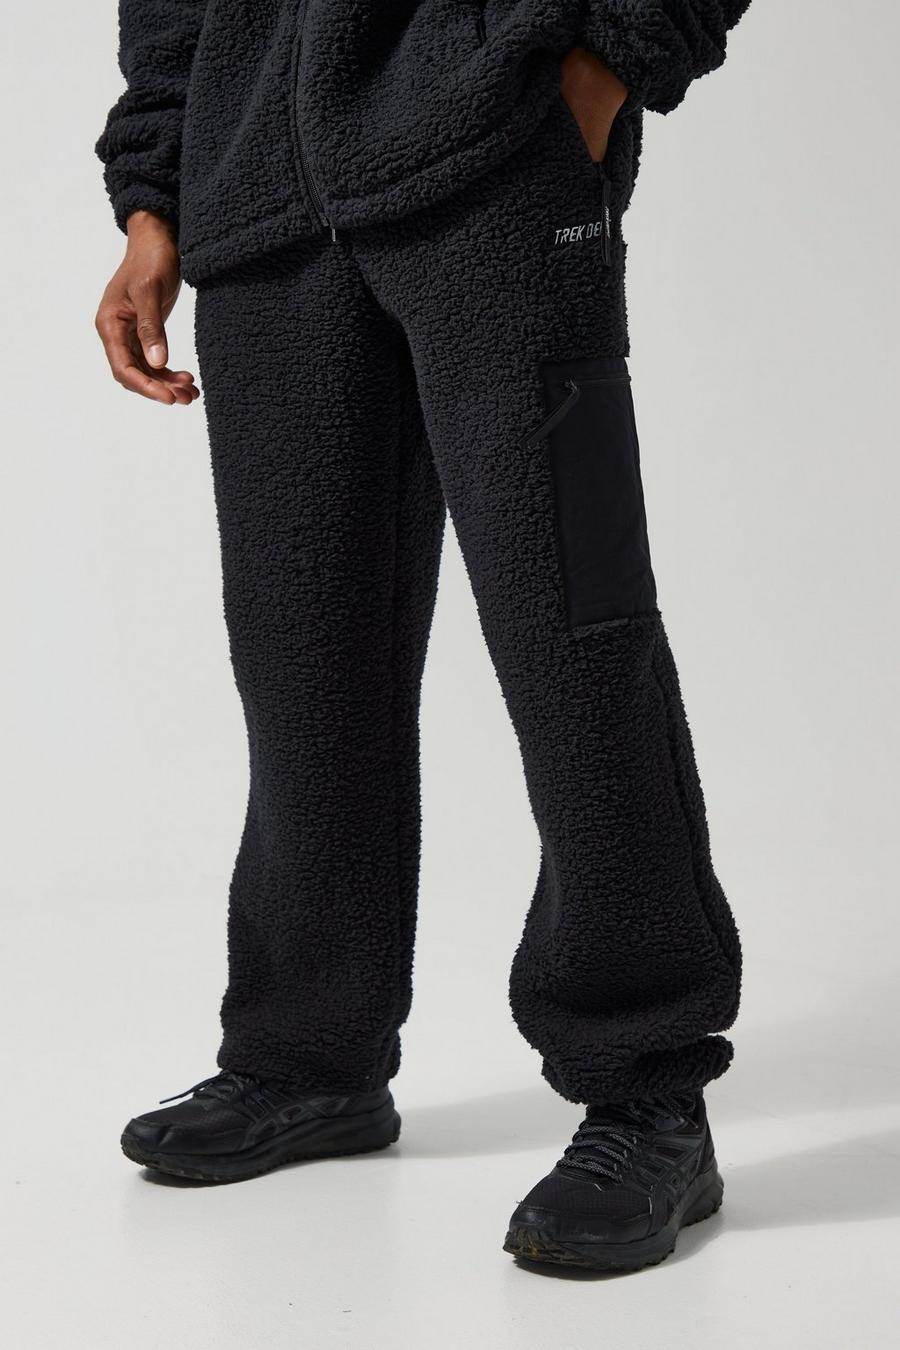 Pantalón deportivo Active TREK oversize de borreguito con botamanga, Black